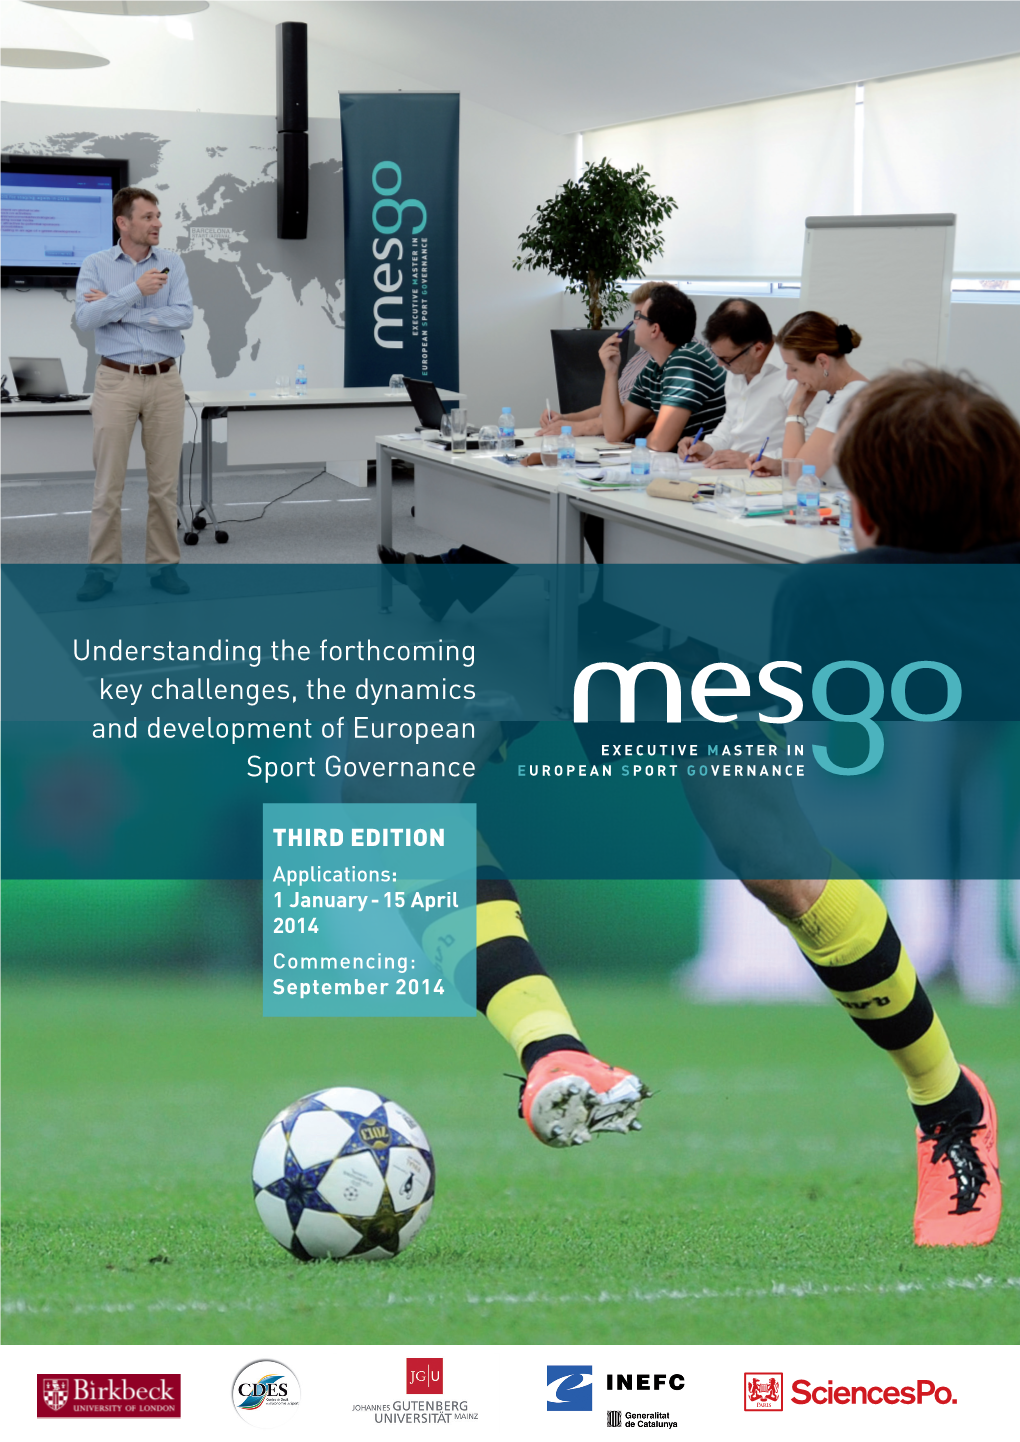 MESGO Third Edition Brochure